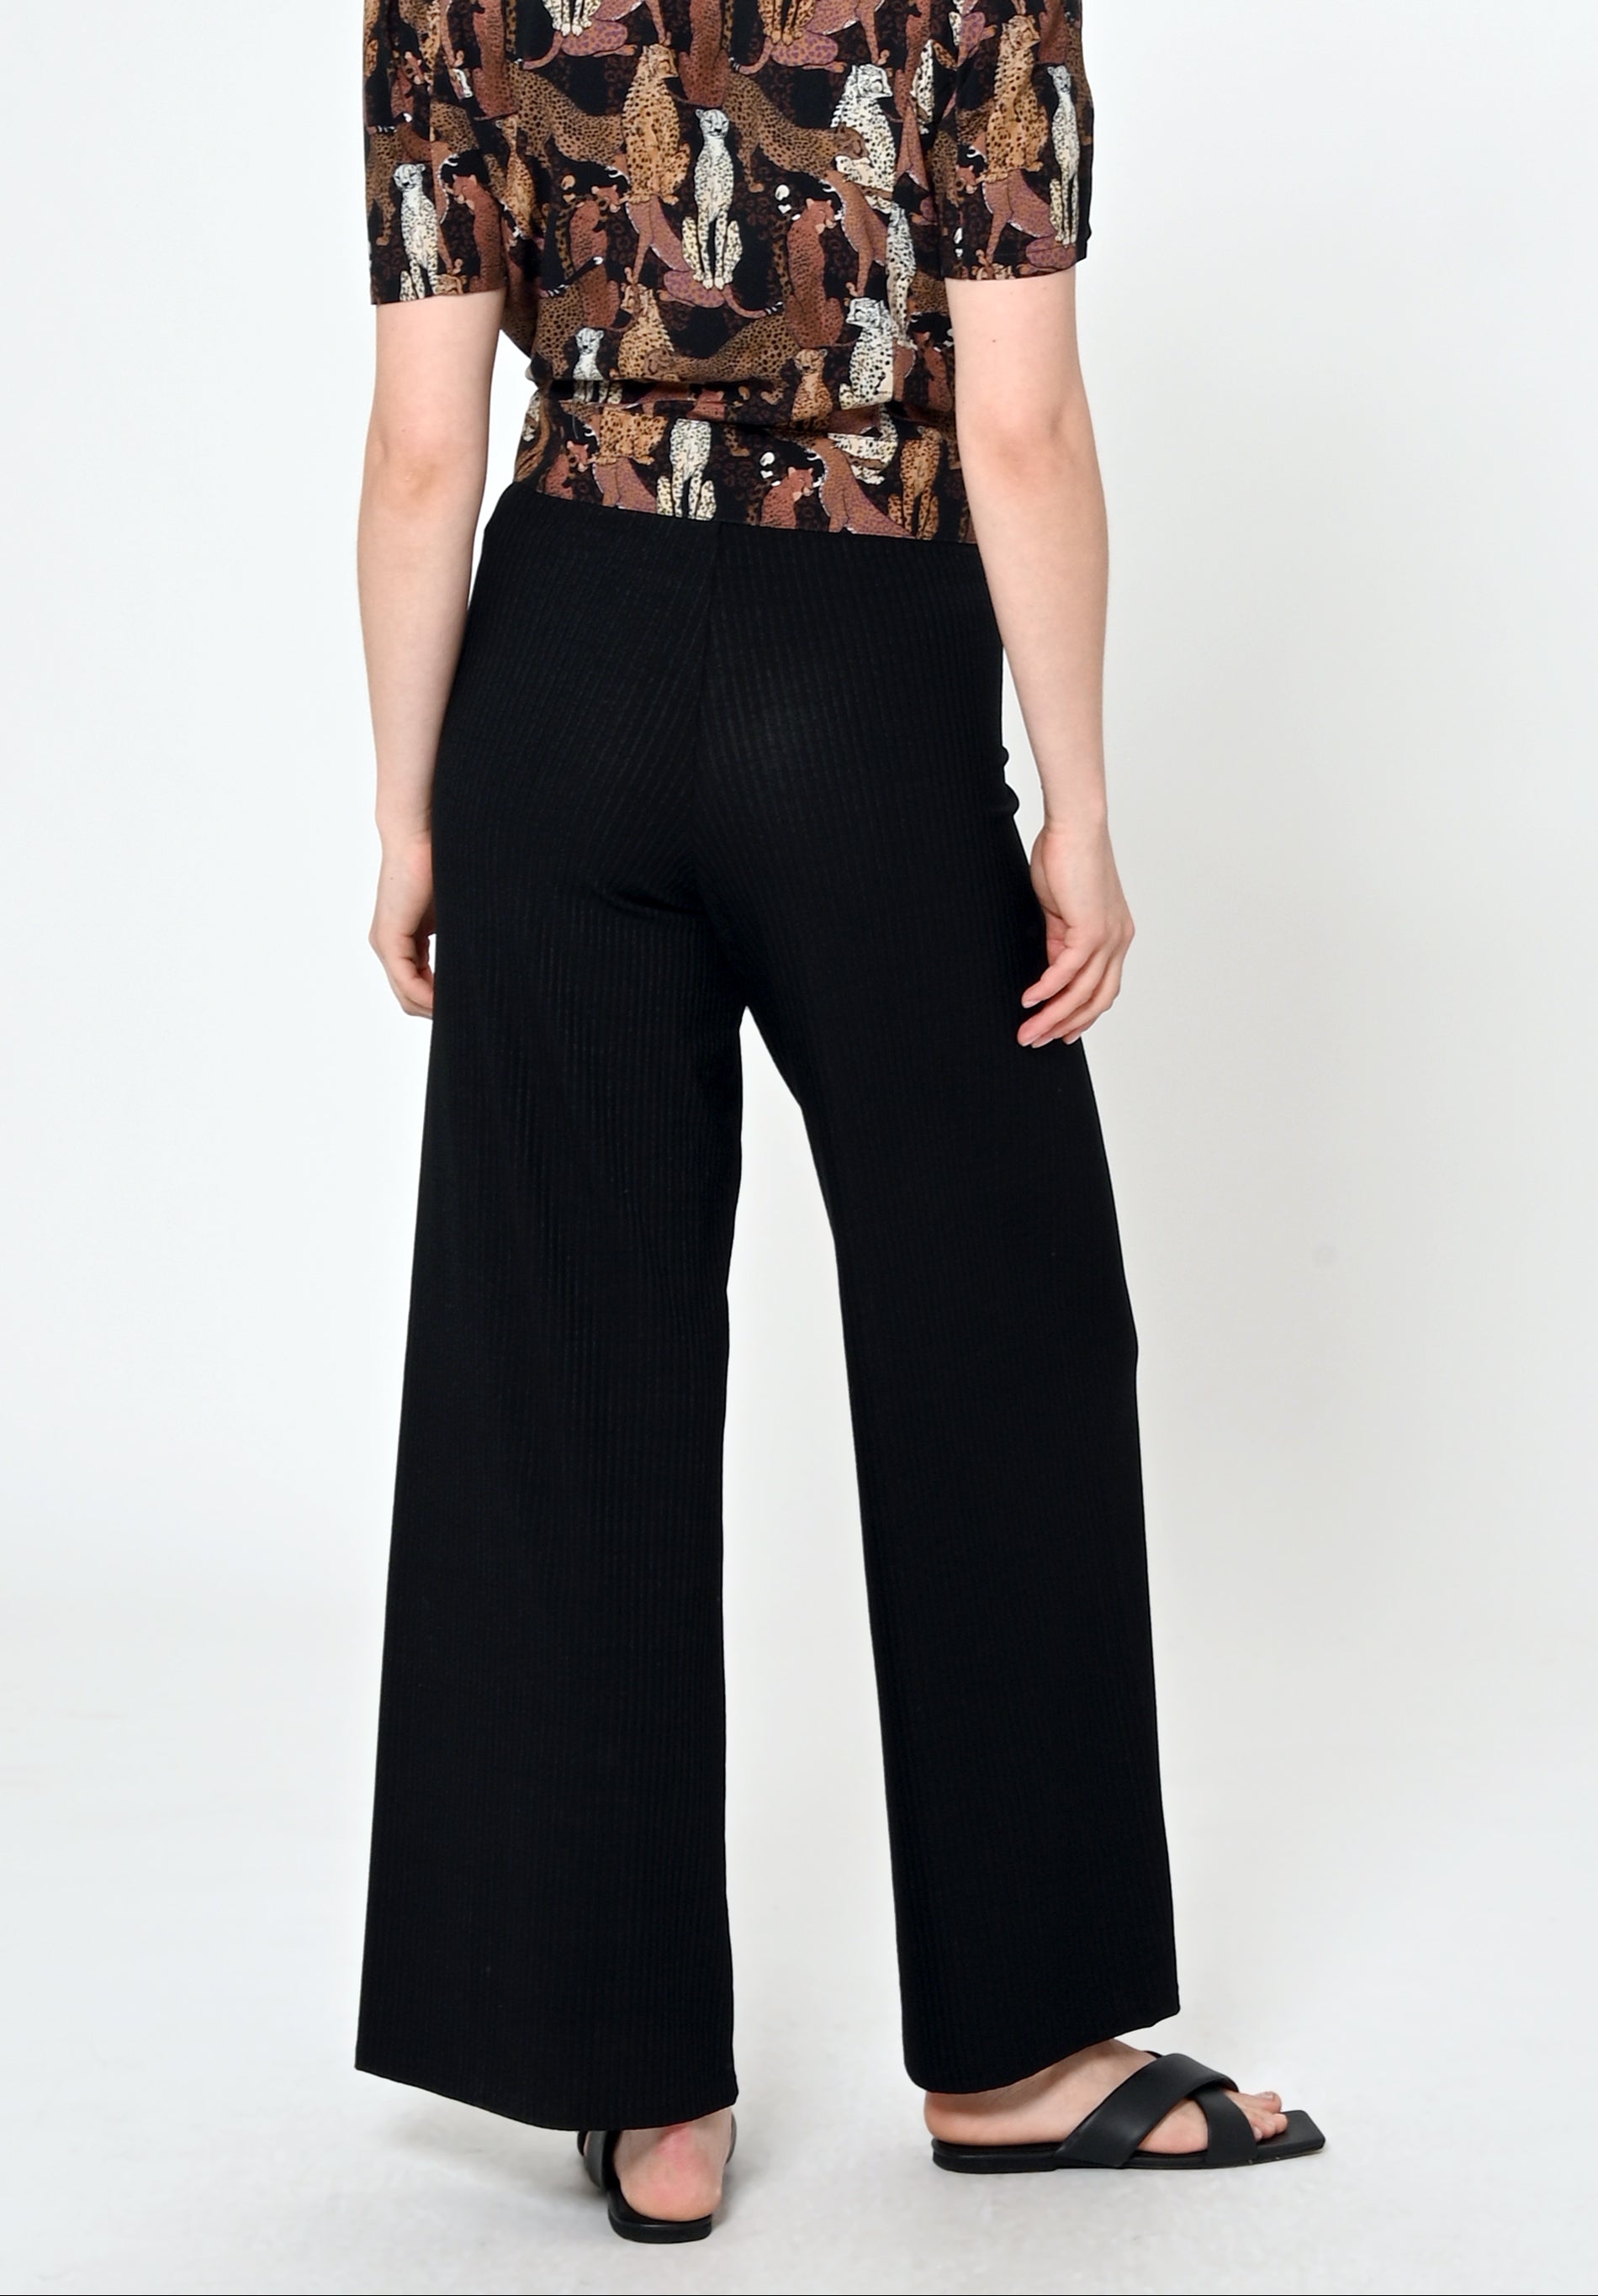 Culotte trousers MYRINEA in black by LOVJOI made of Tencel™ (ST)